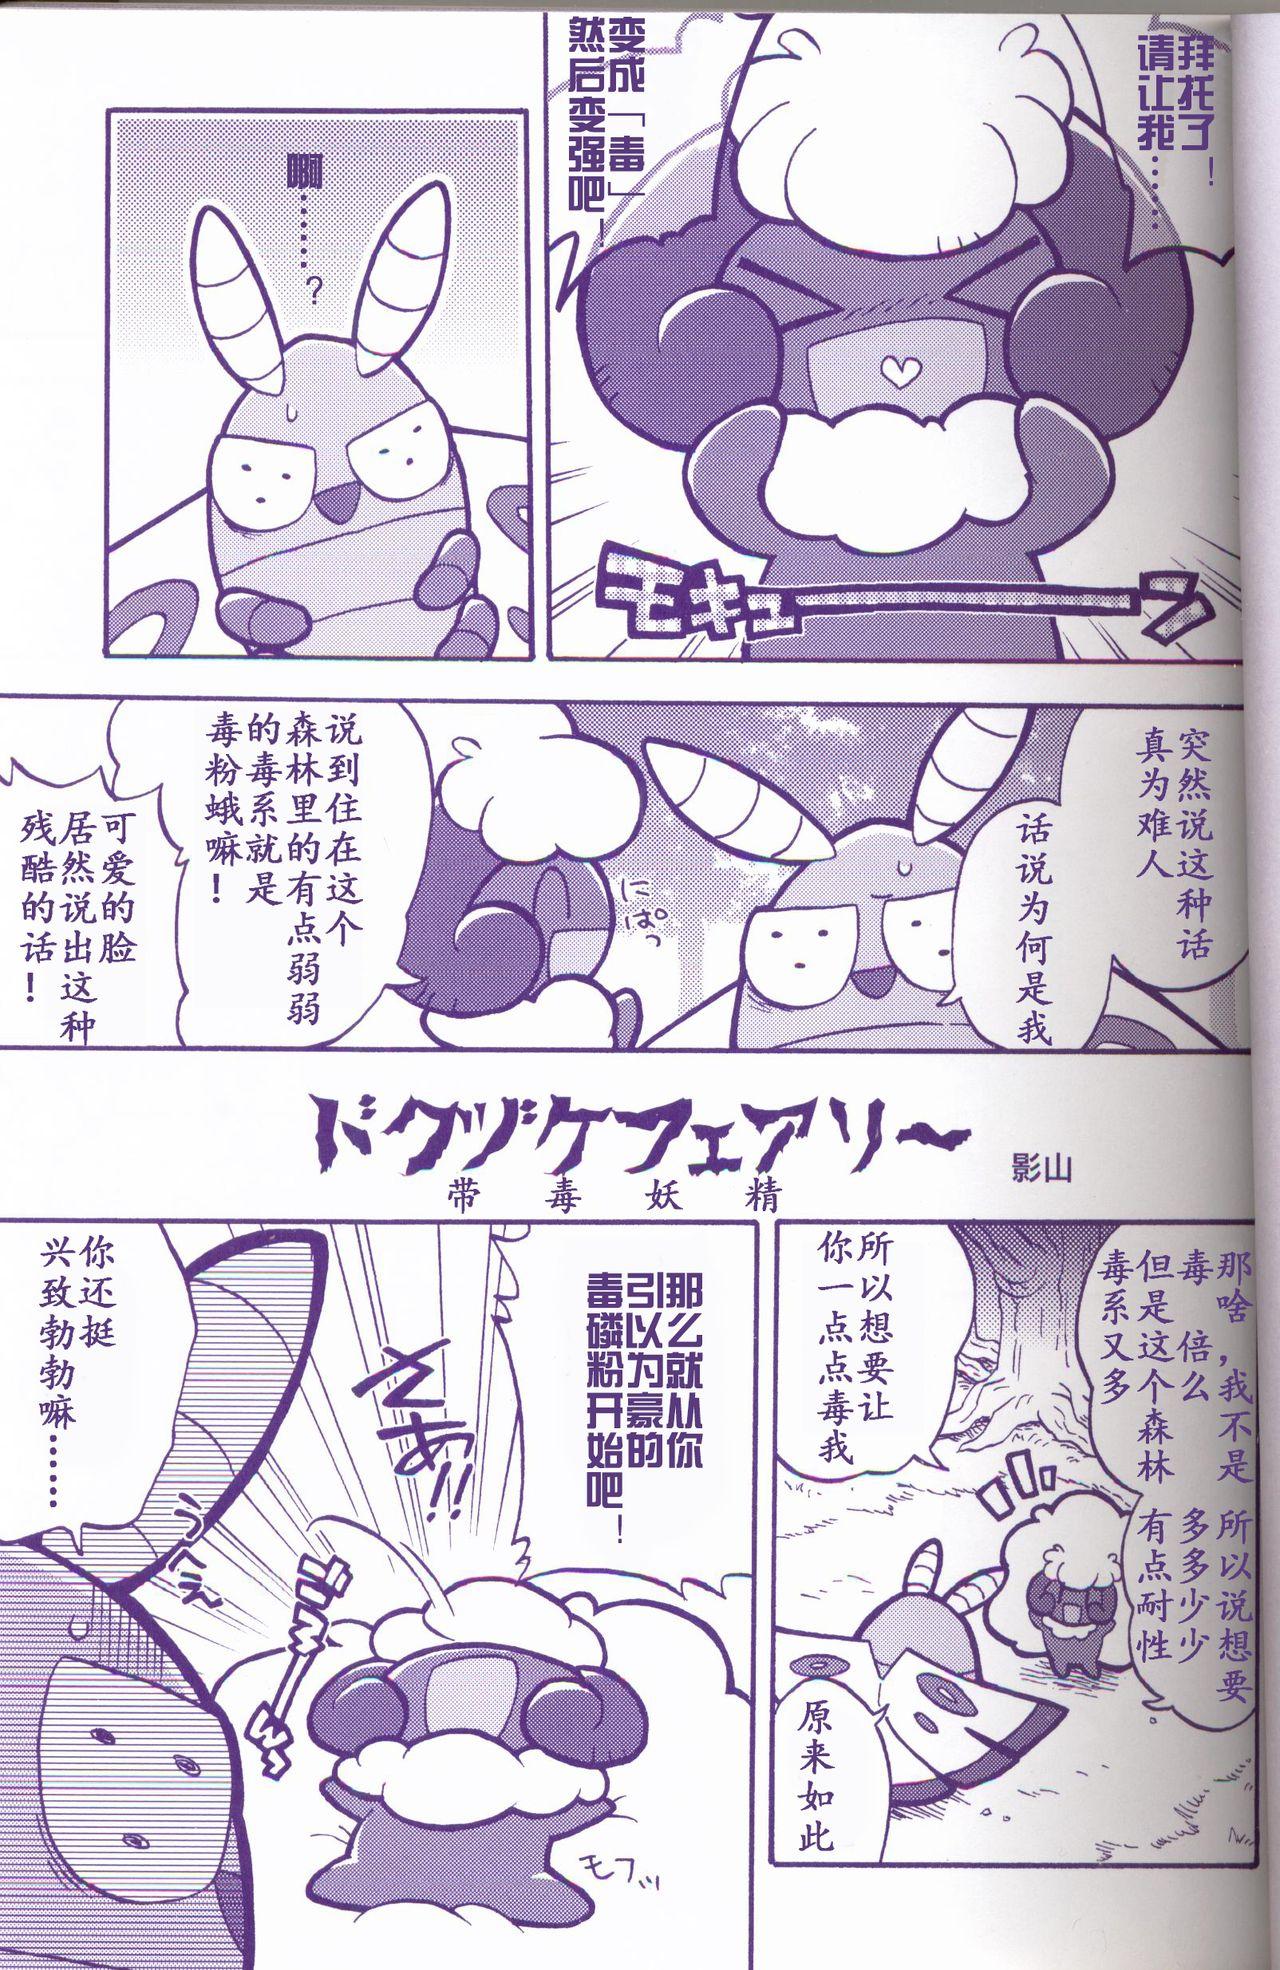 Clit Joutai Ijou CASE:1 Doku | 状态异常 CASE:1 毒 - Pokemon Ex Girlfriends - Page 2